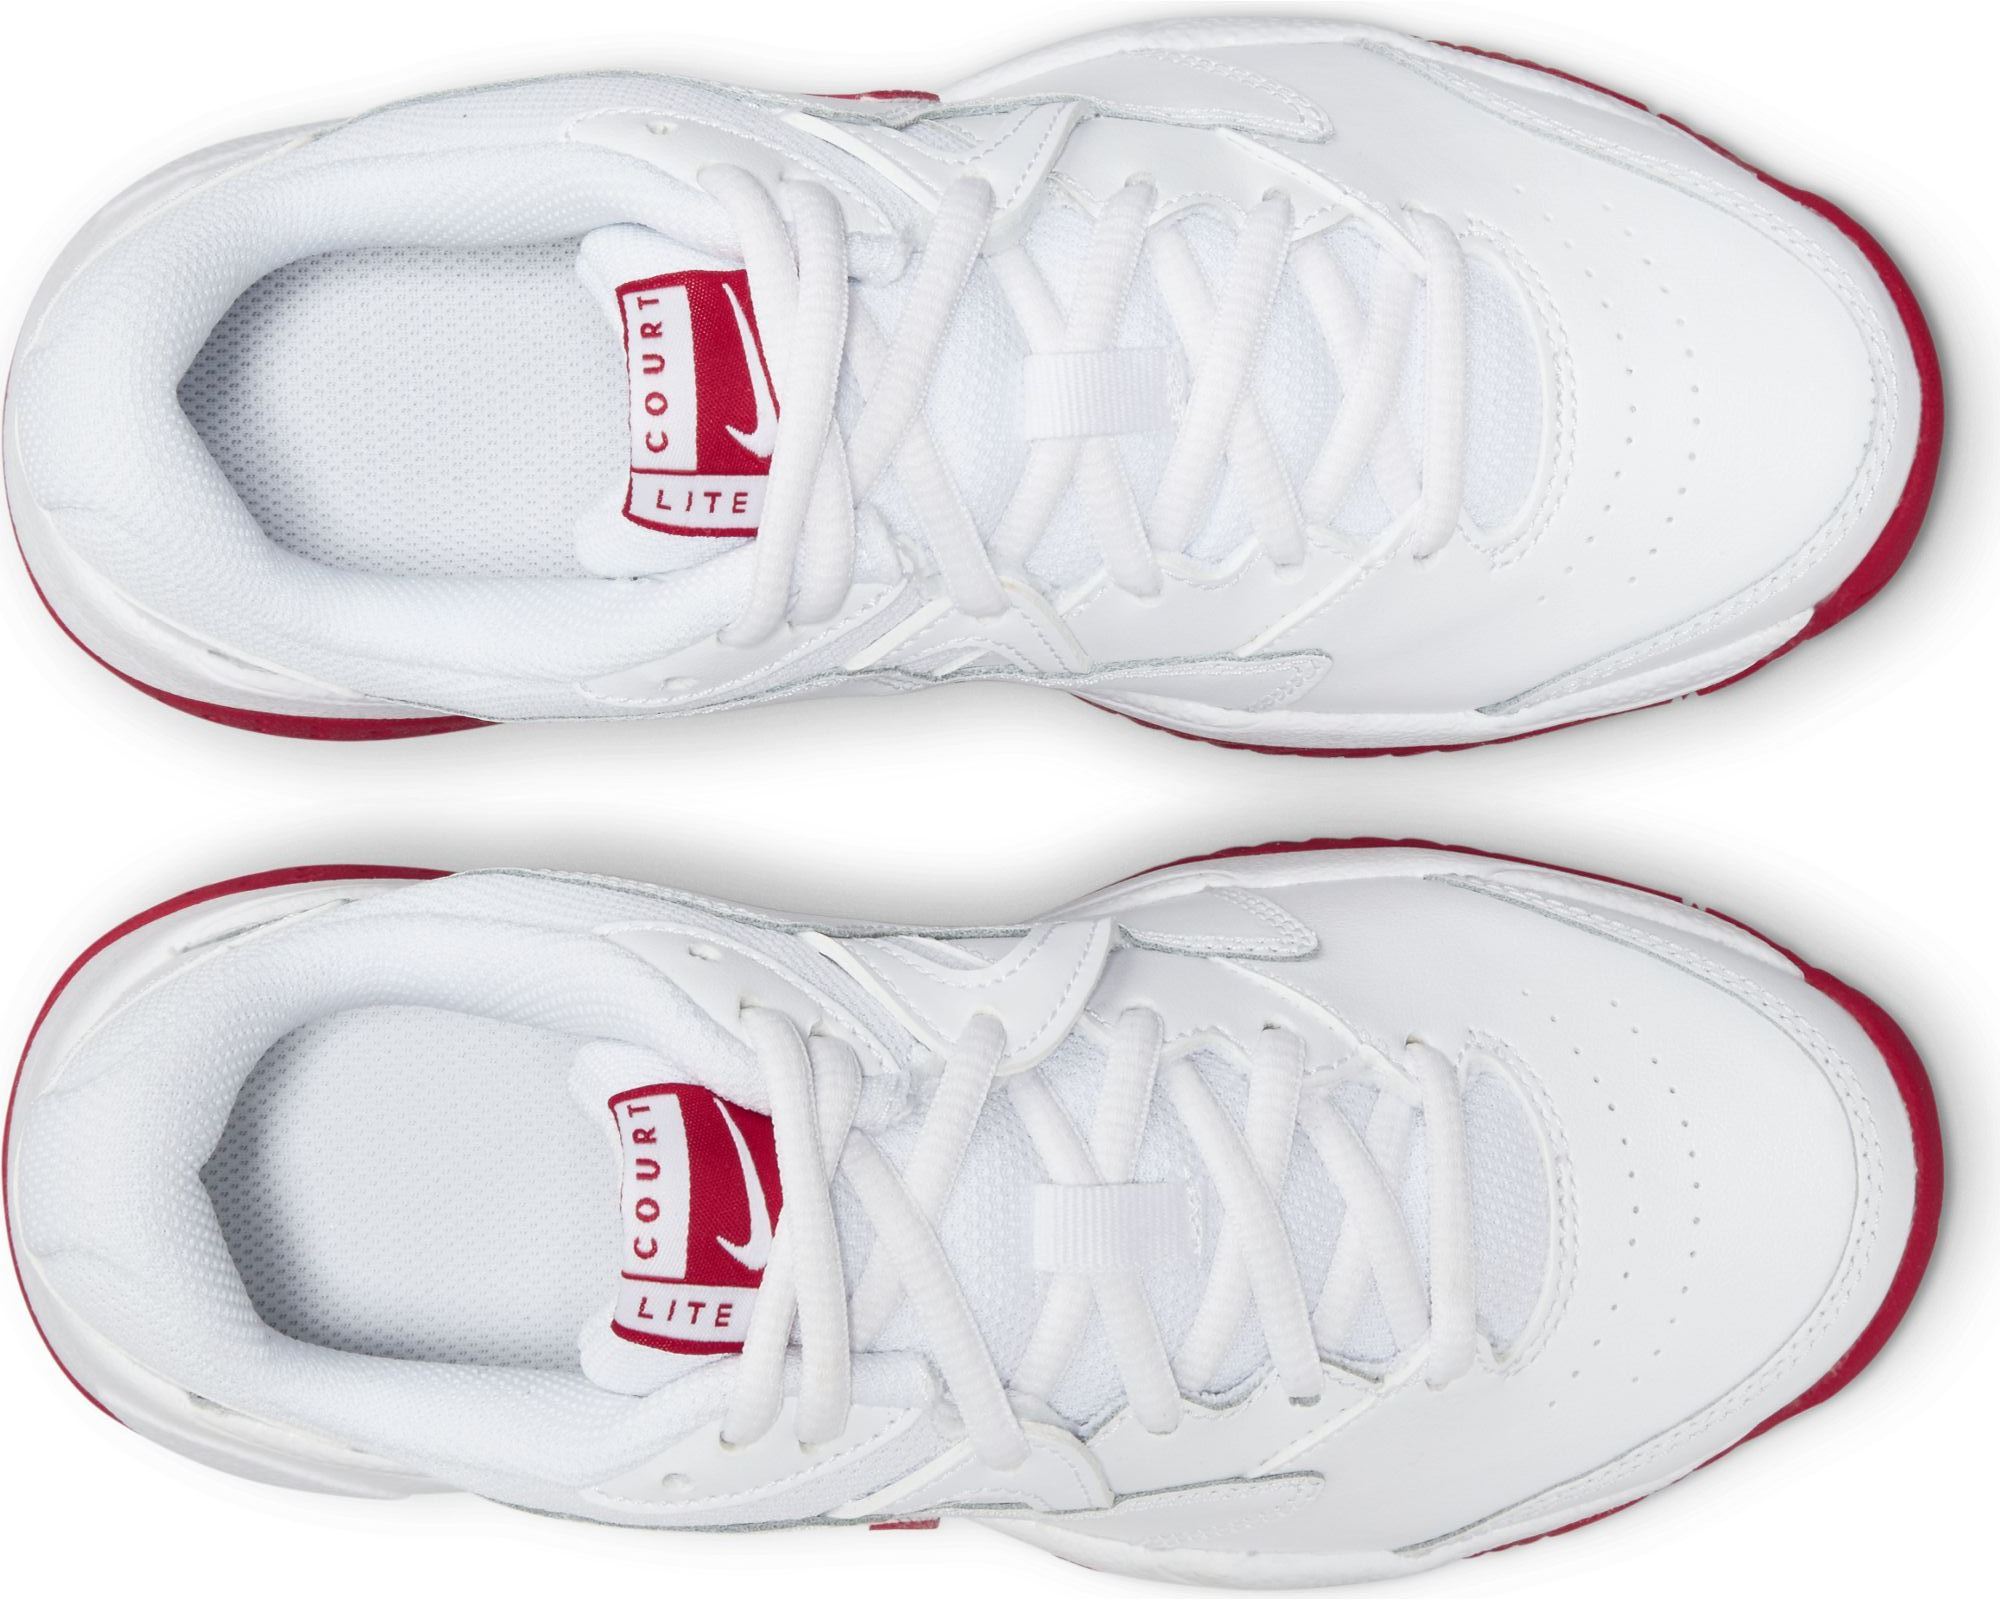 Junior’s tennis footwear